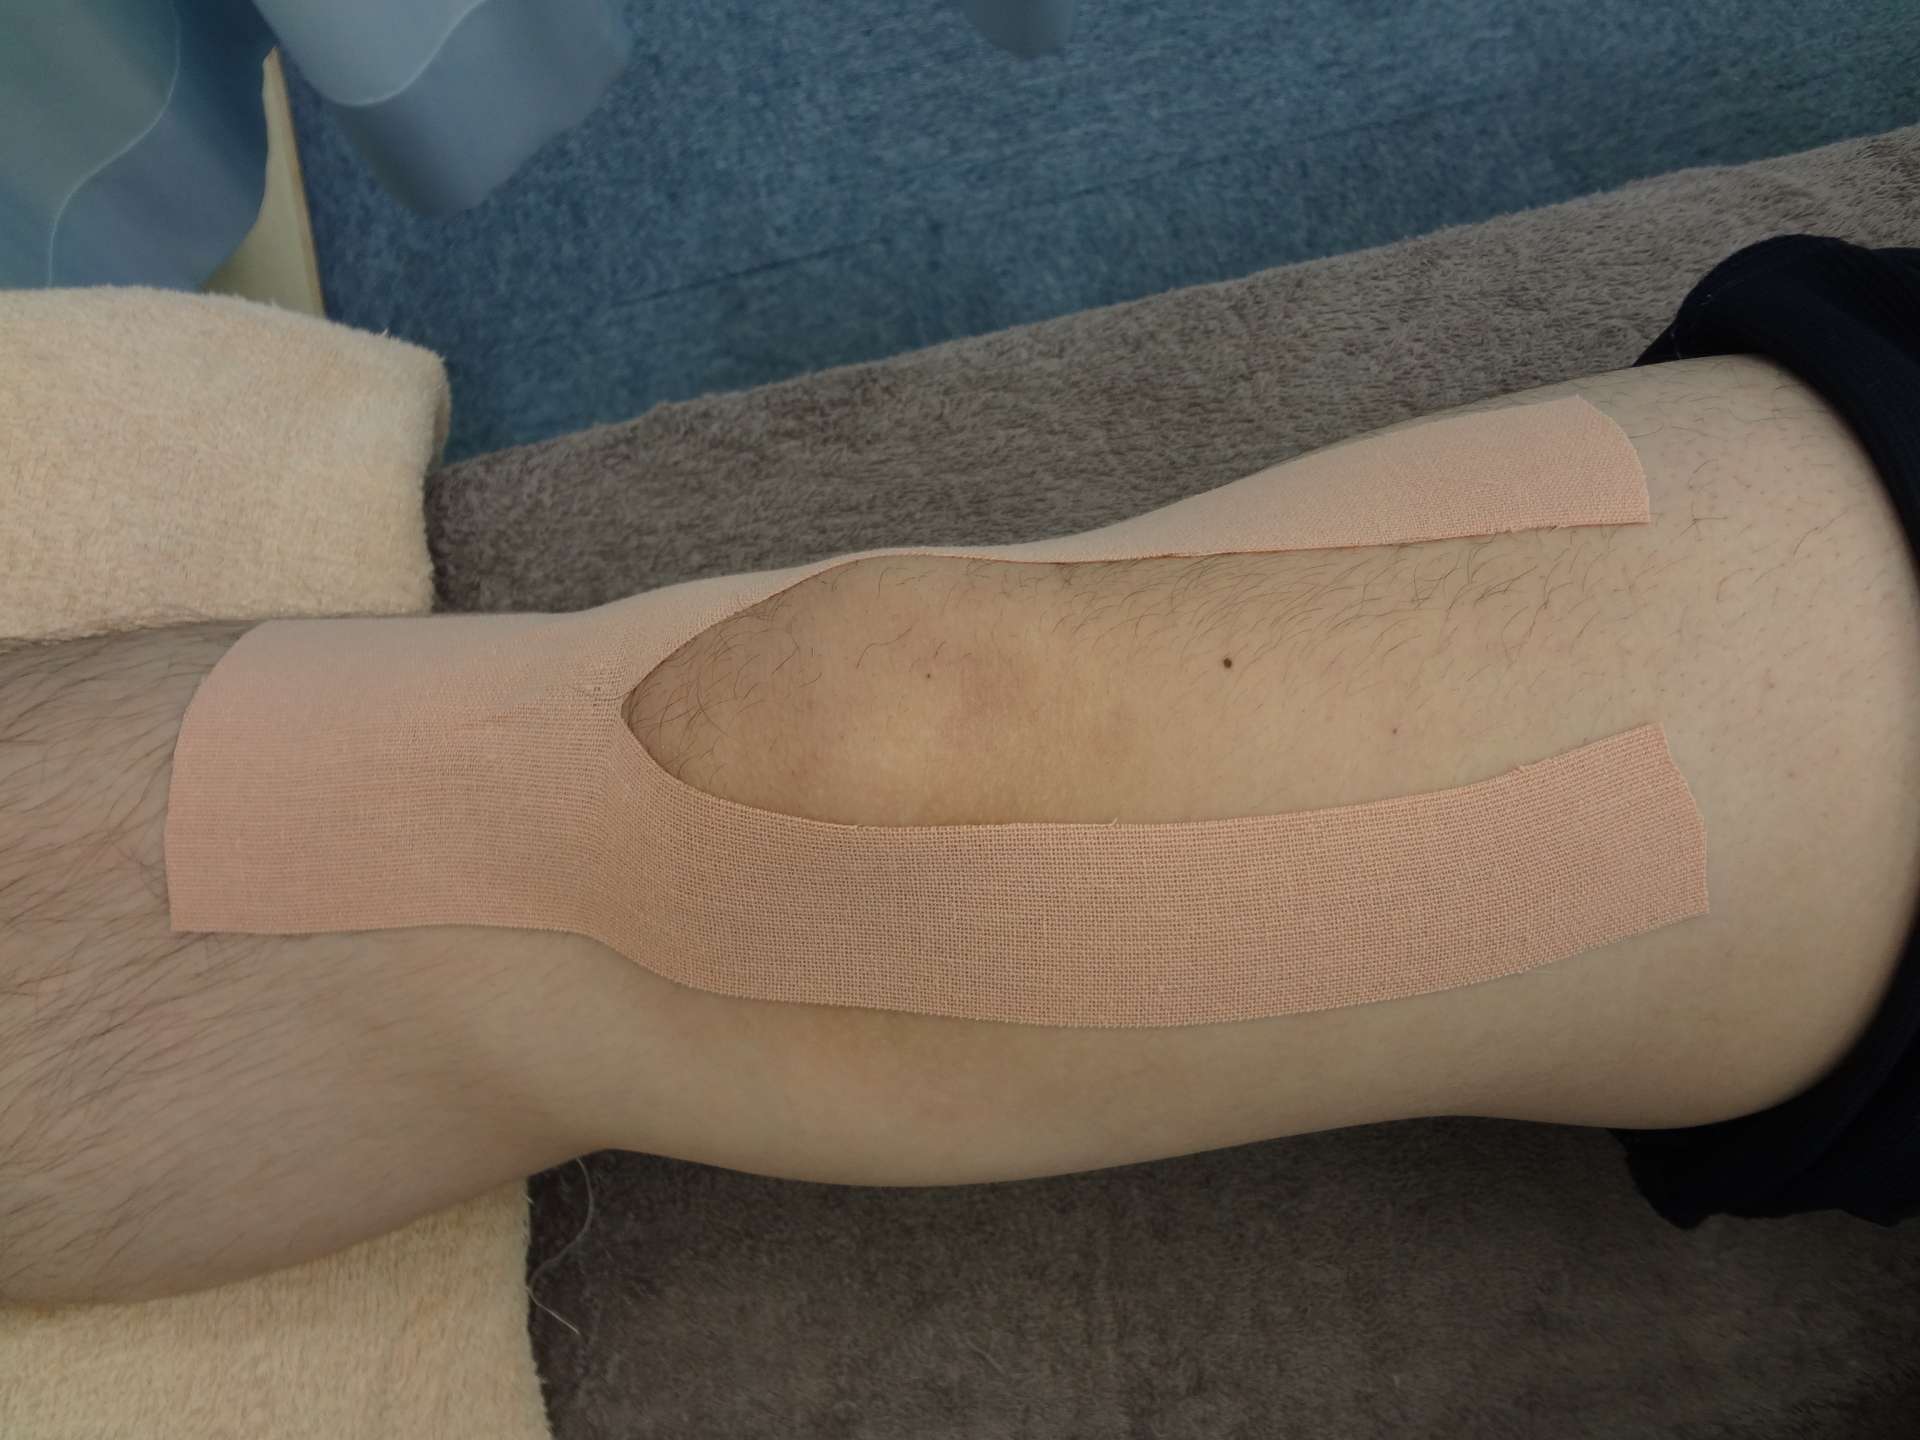 ジャンパー膝を改善する方法